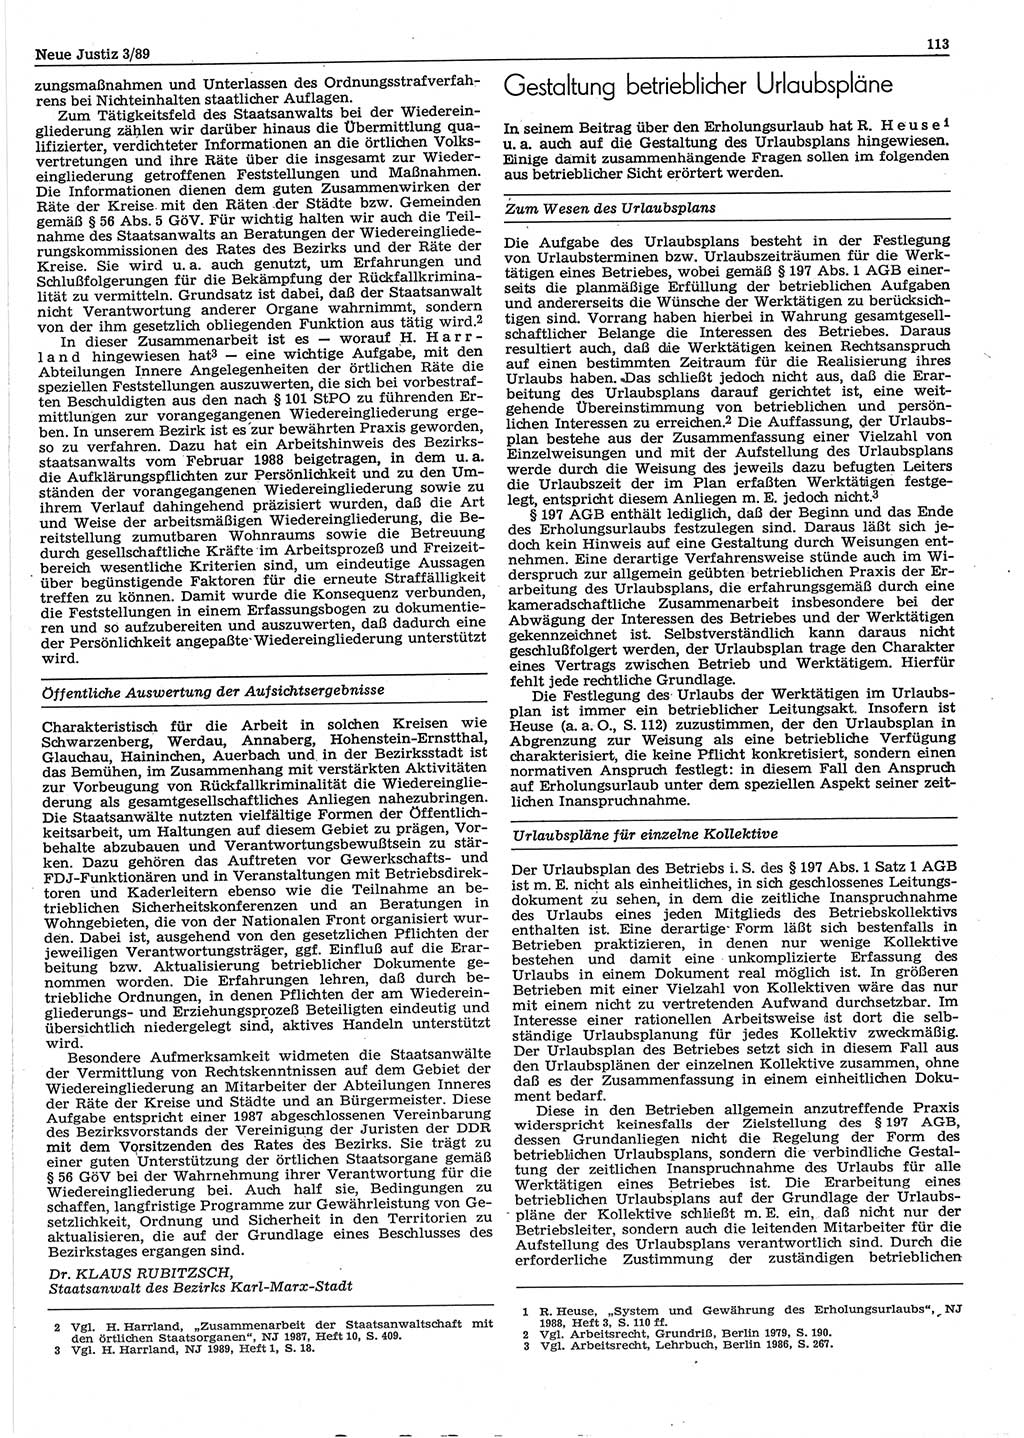 Neue Justiz (NJ), Zeitschrift für sozialistisches Recht und Gesetzlichkeit [Deutsche Demokratische Republik (DDR)], 43. Jahrgang 1989, Seite 113 (NJ DDR 1989, S. 113)